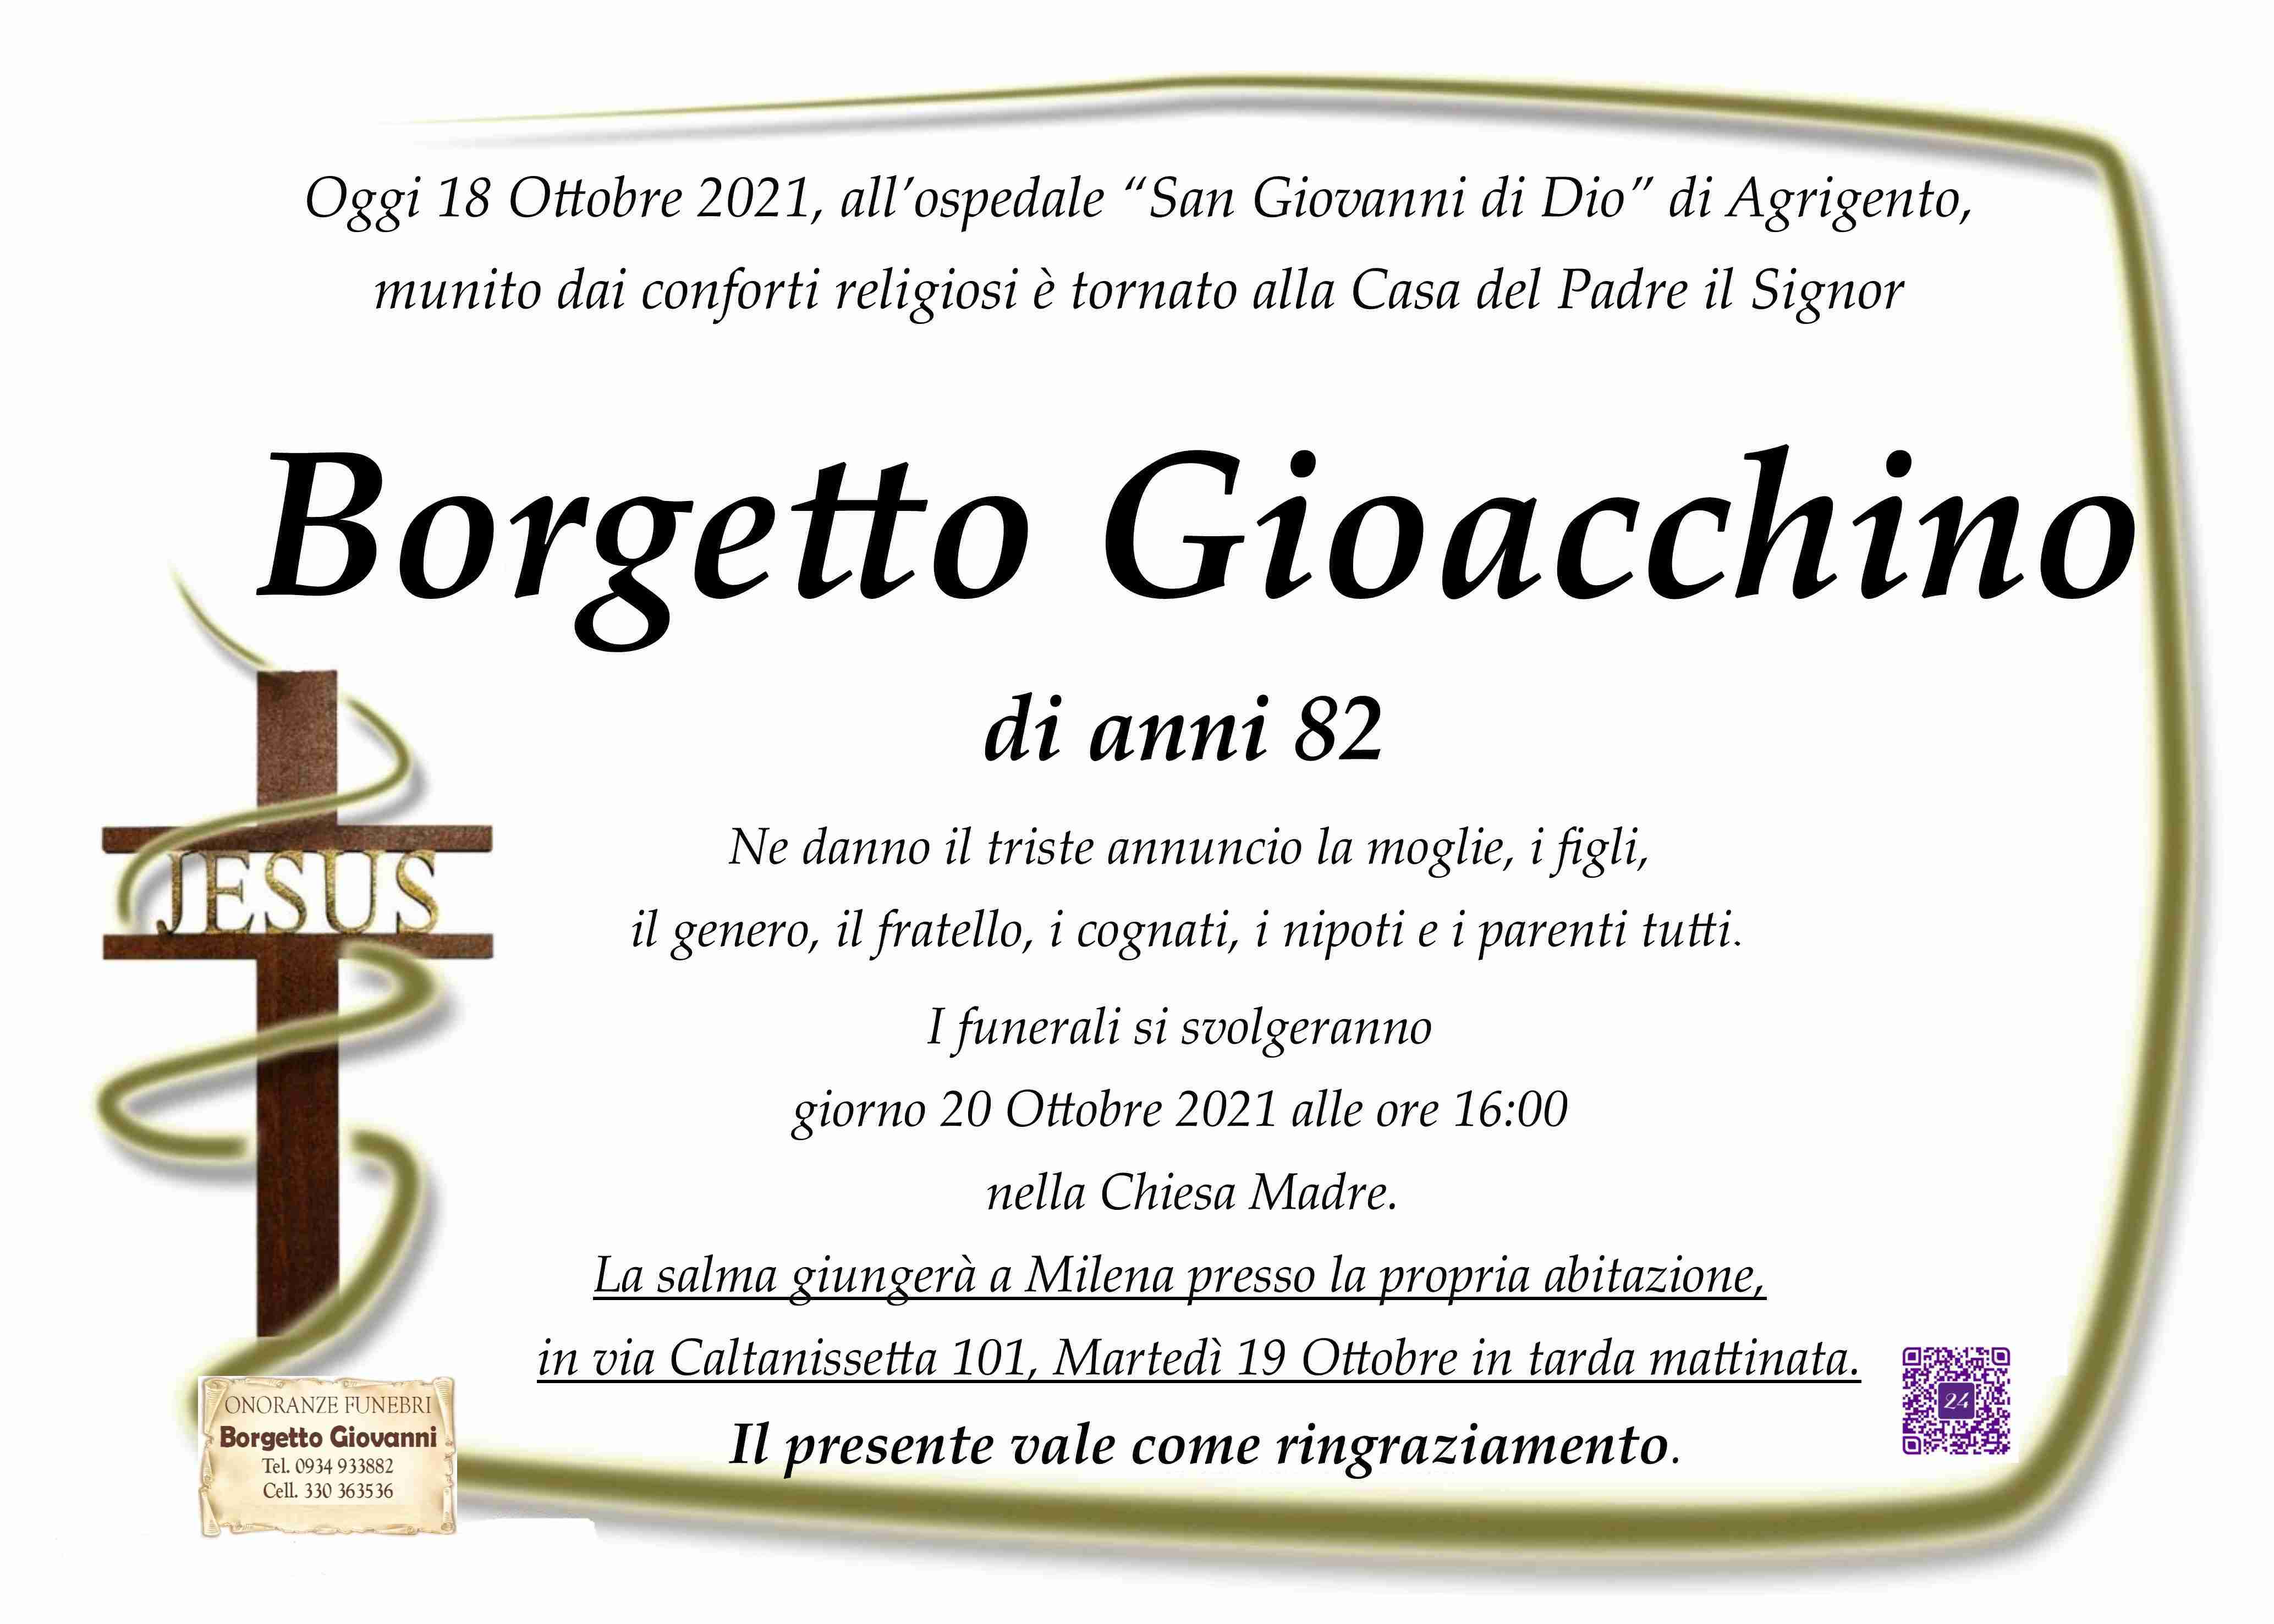 Gioacchino Borgetto